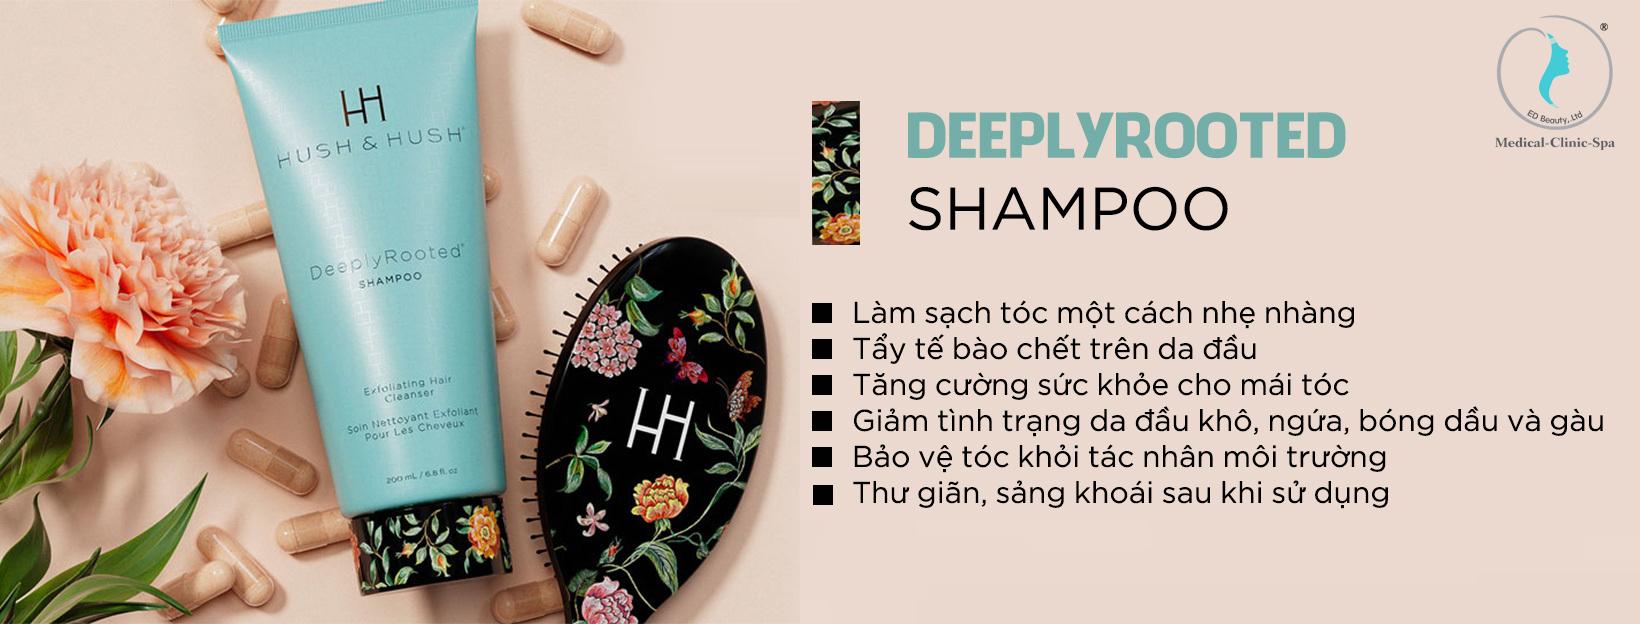 Công dụng của dầu gội Hush and Hush DeeplyRooted Shampoo